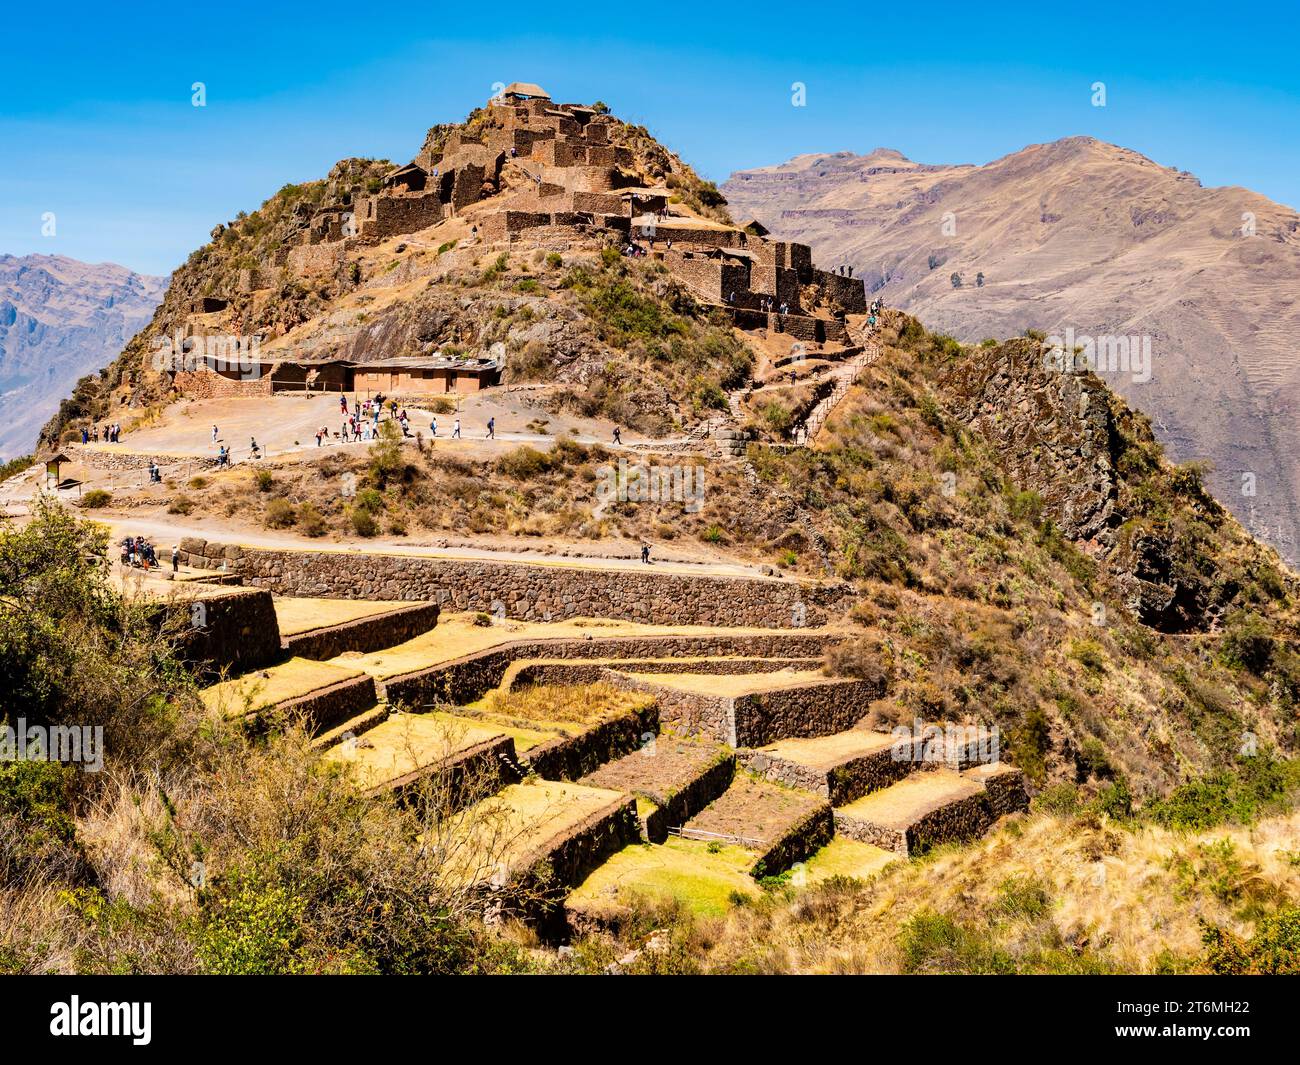 Vue imprenable sur le complexe archéologique de Pisac avec les ruines de la vieille ville et les champs agricoles en terrasses, vallée sacrée des Incas, région de Cusco, Pérou Banque D'Images